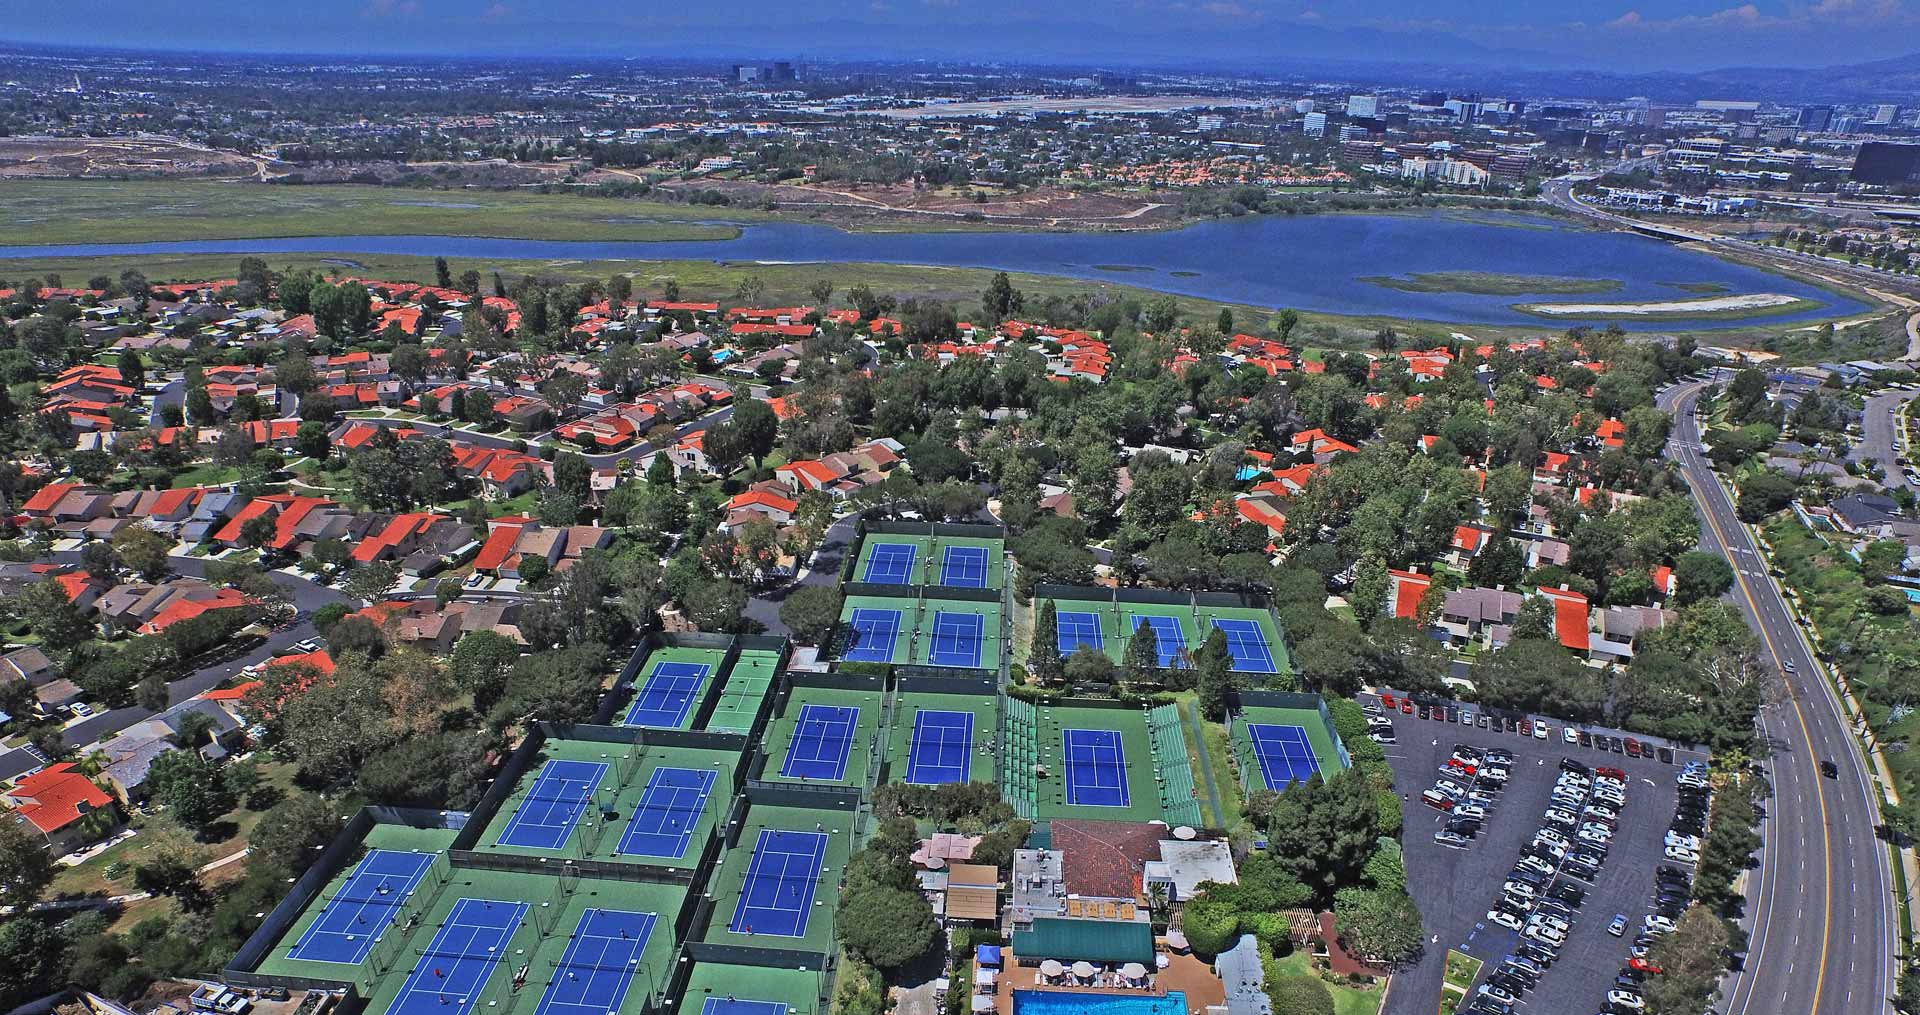 Newport Beach Overview ATP Tour Tennis